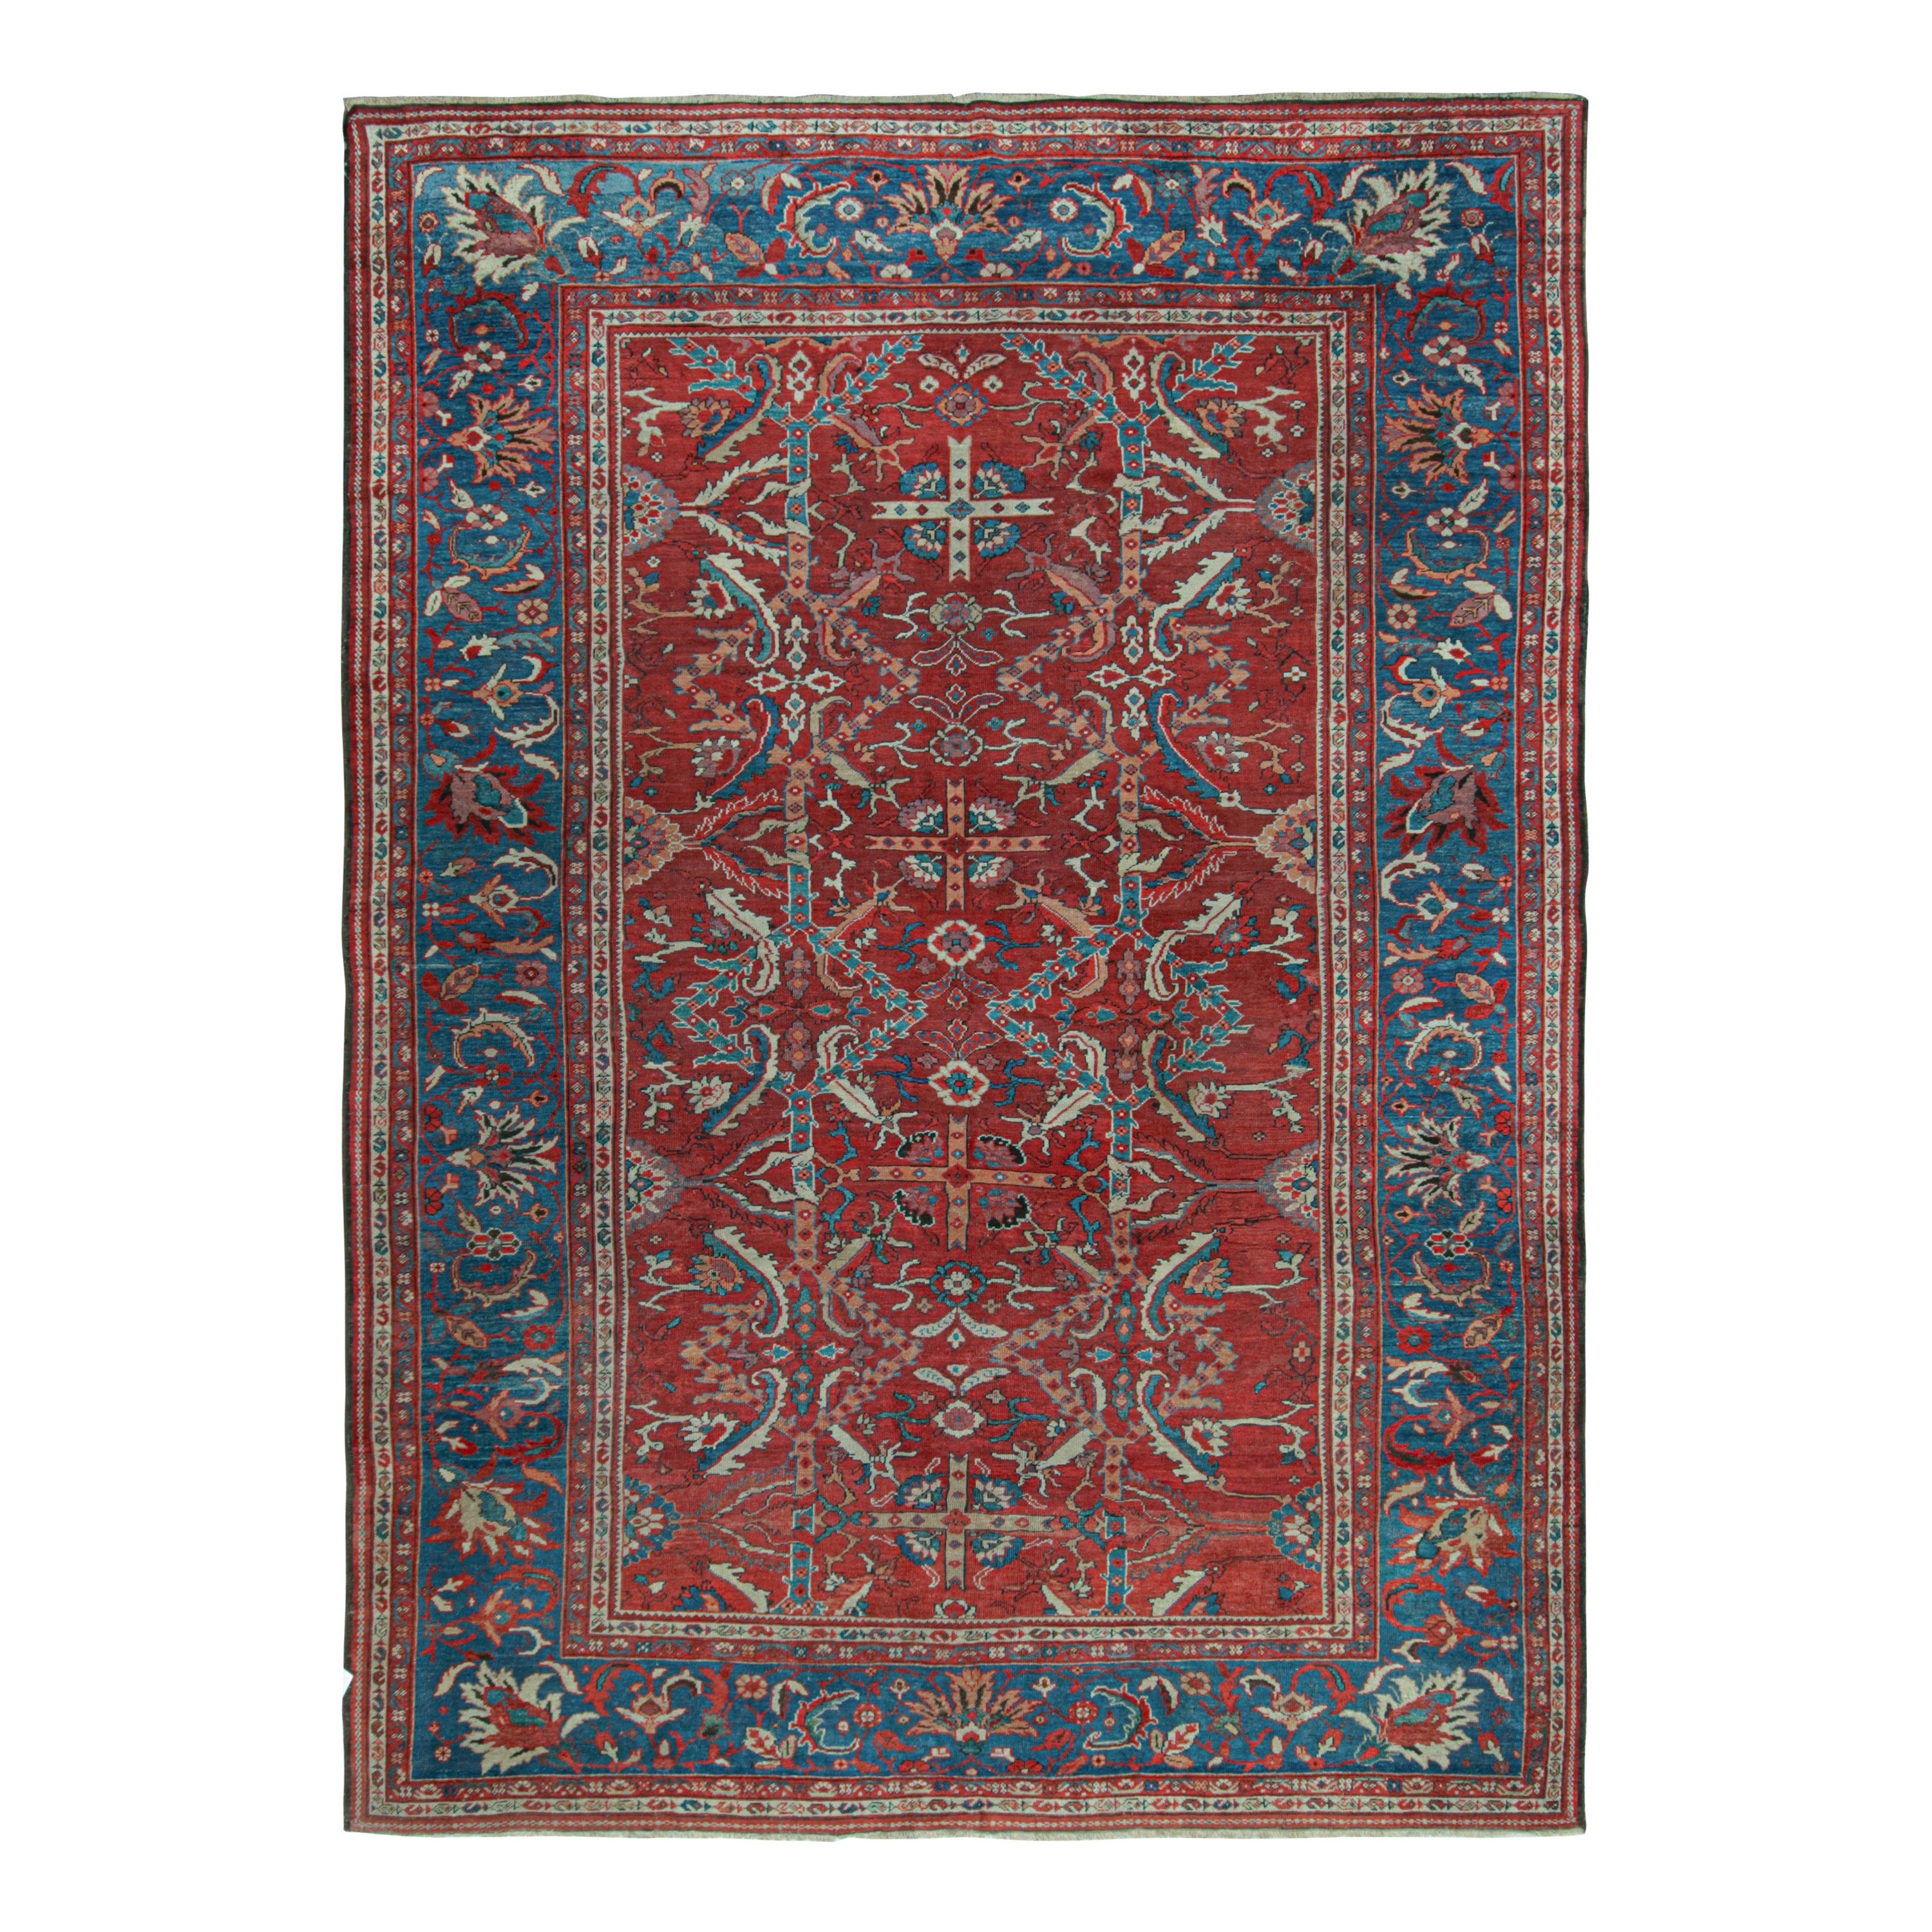 Tapis persan Sultanabad antique avec motifs floraux rouge-bleu, de Rug & Kilim